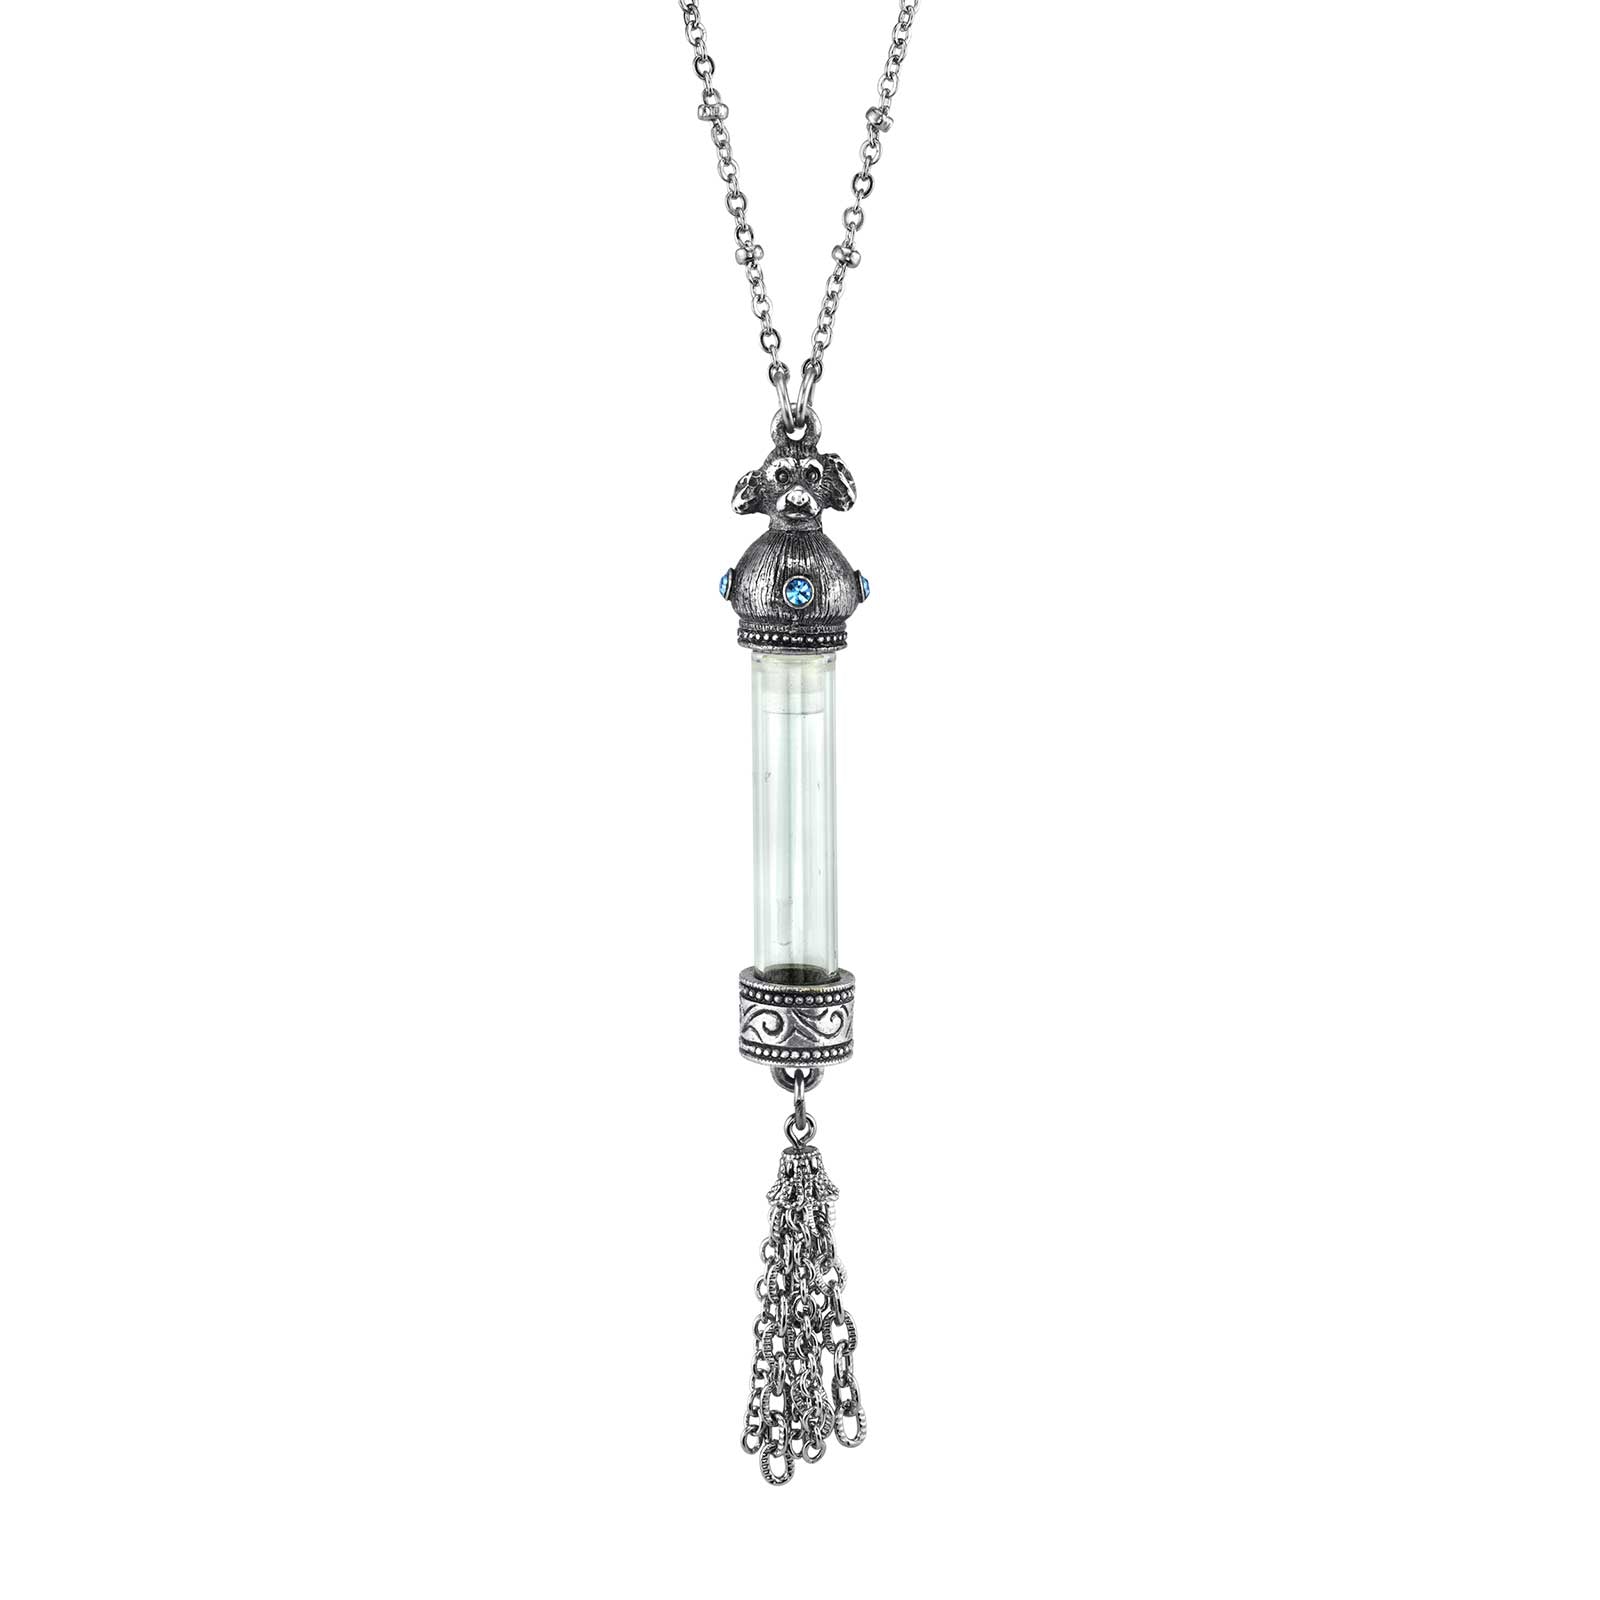 Antiqued Pewter Blue Crystal Cat Vial Tassle Necklace 30in